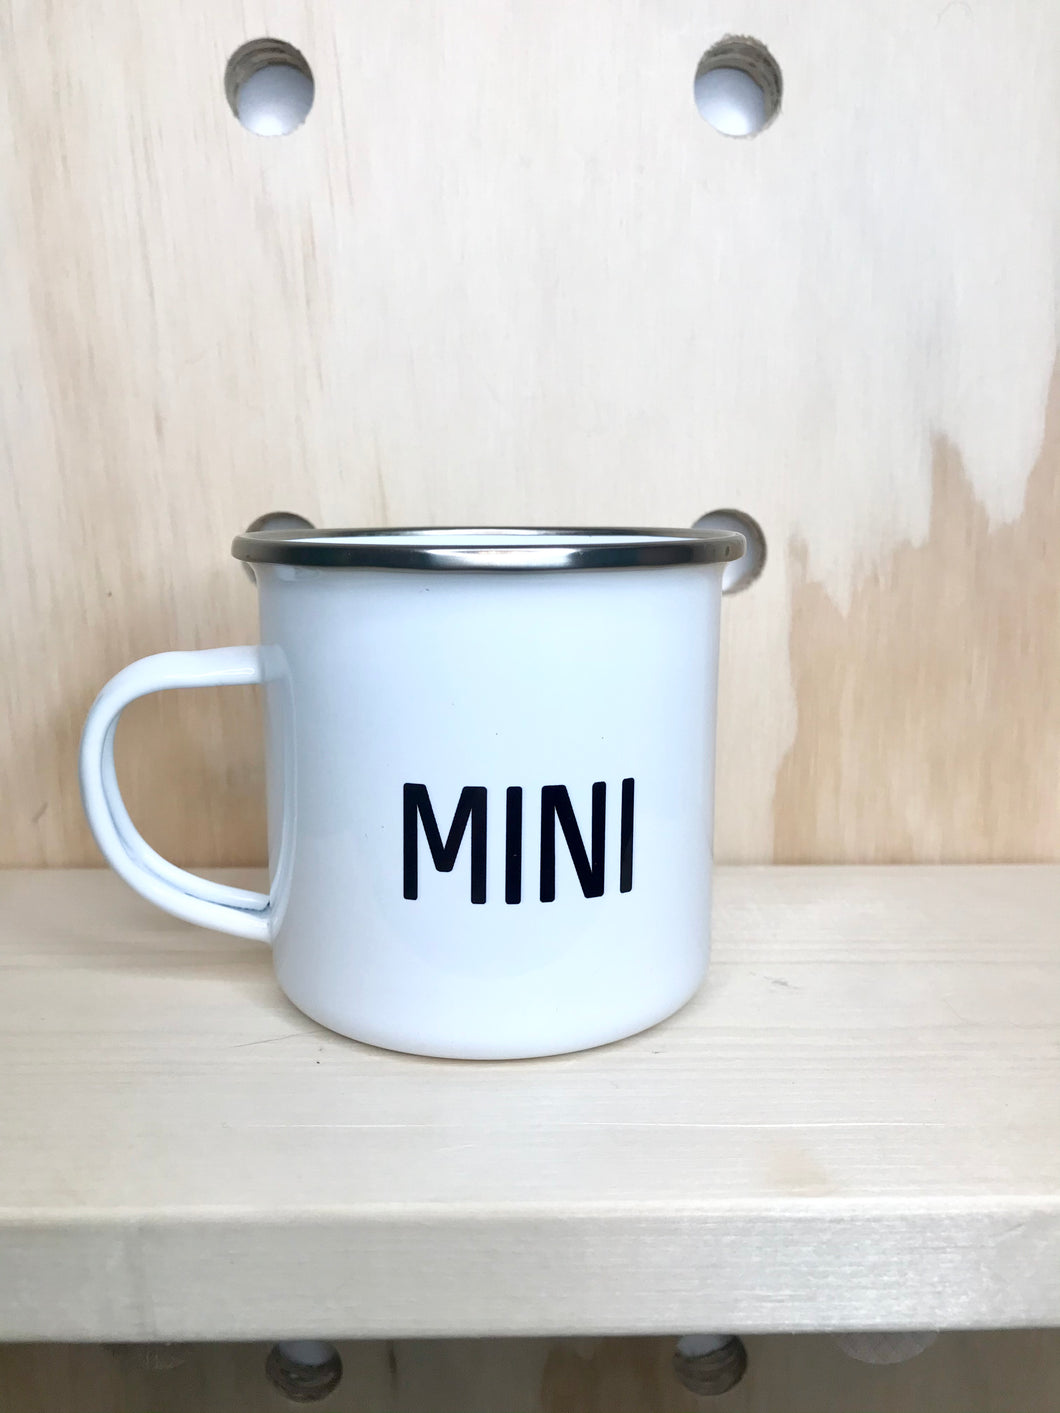 Mini enamel cup